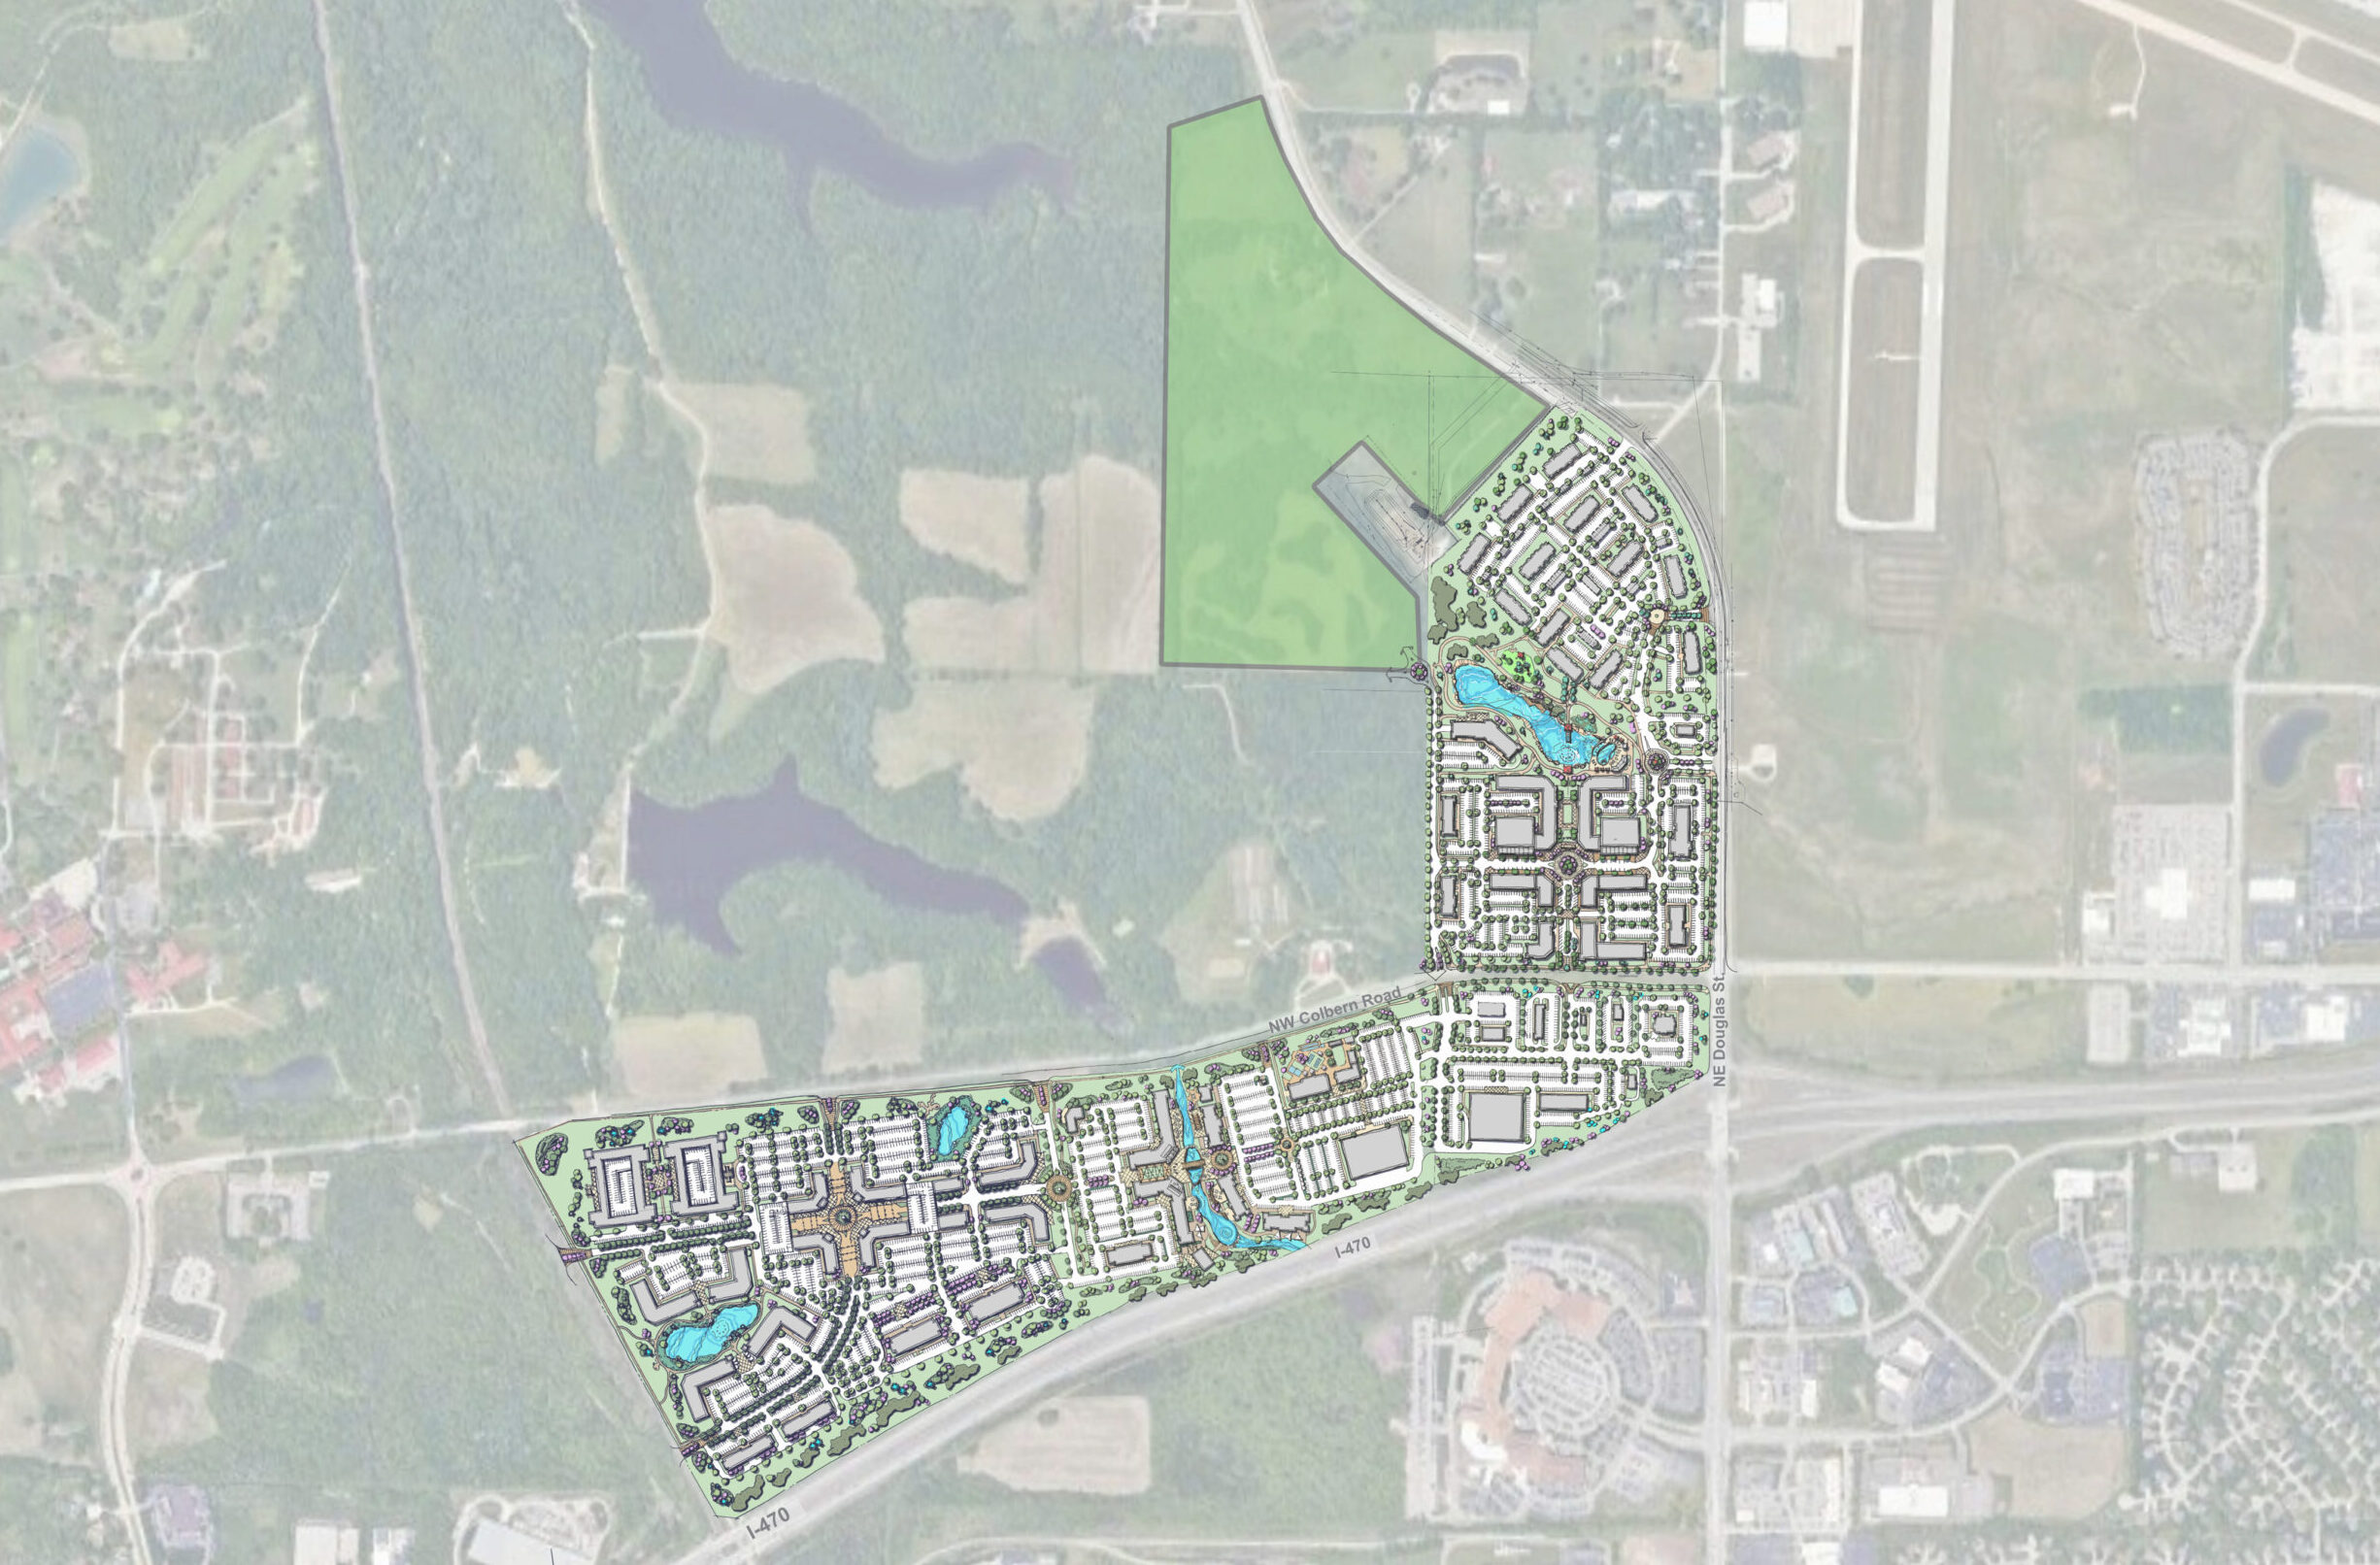 2022 1219 Discovery Park Concept Master Plan Landscape Orientation Exhibit